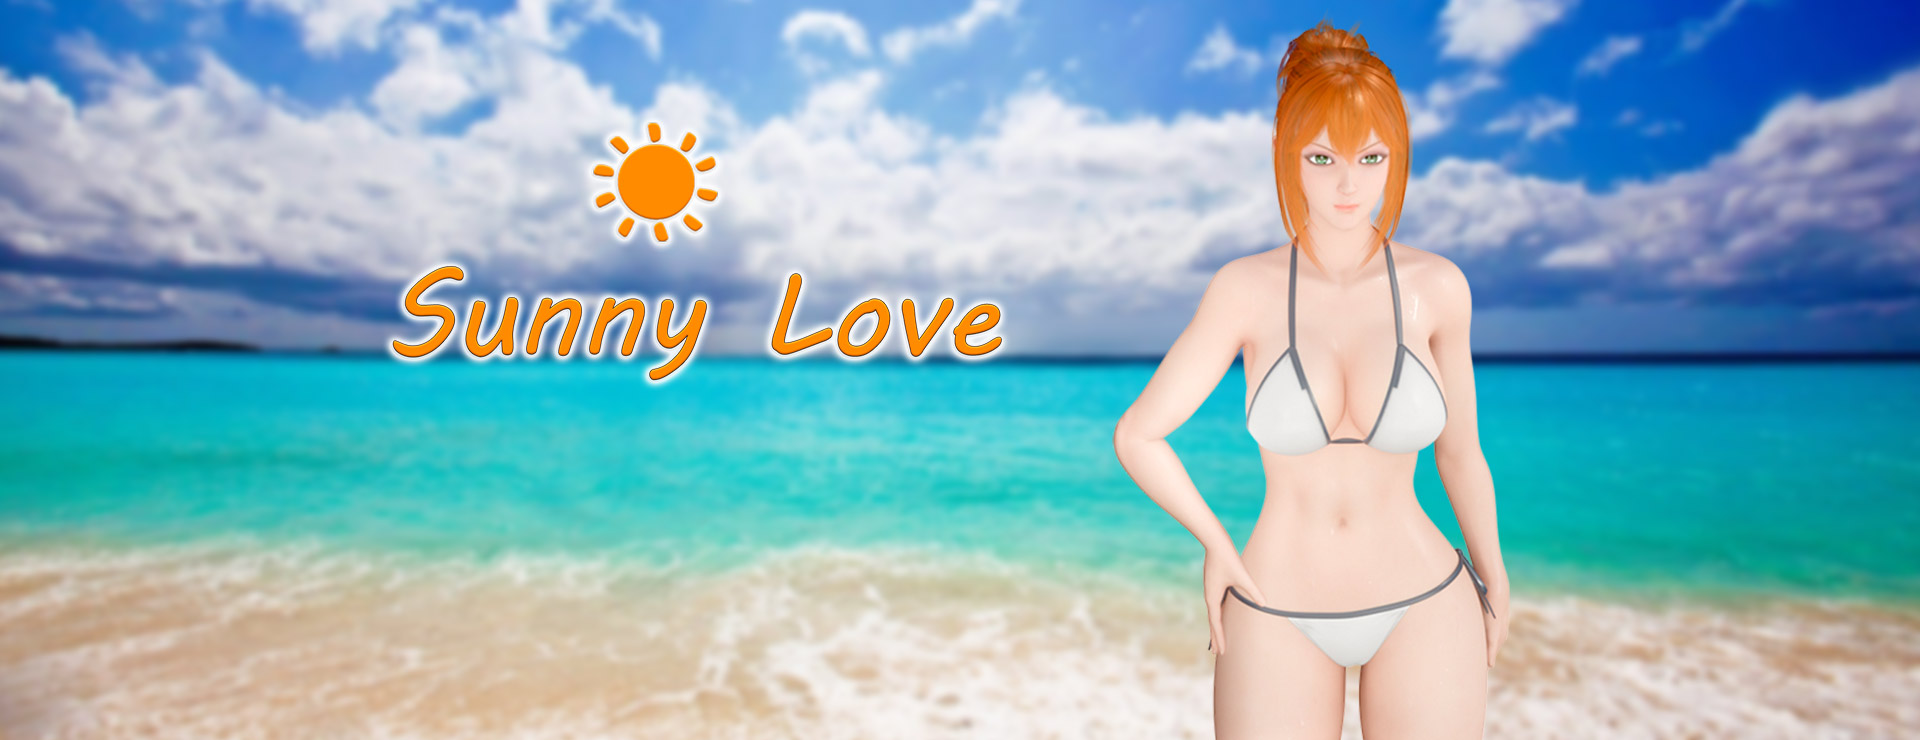 Sunny Love - ビジュアルノベル ゲーム